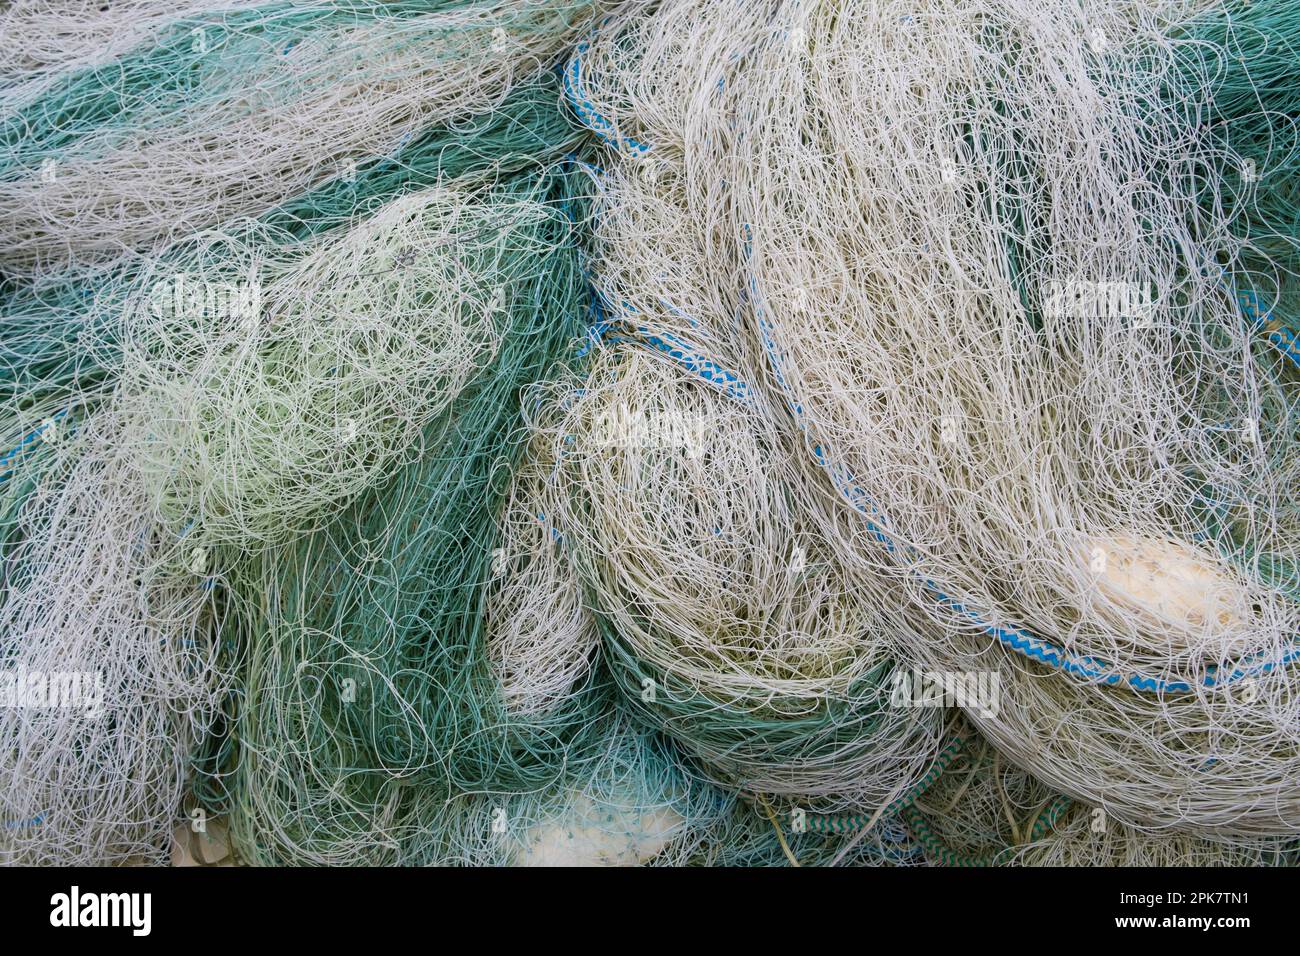 Une pile de filets de pêche commerciale, bleu vert et blanc. Banque D'Images